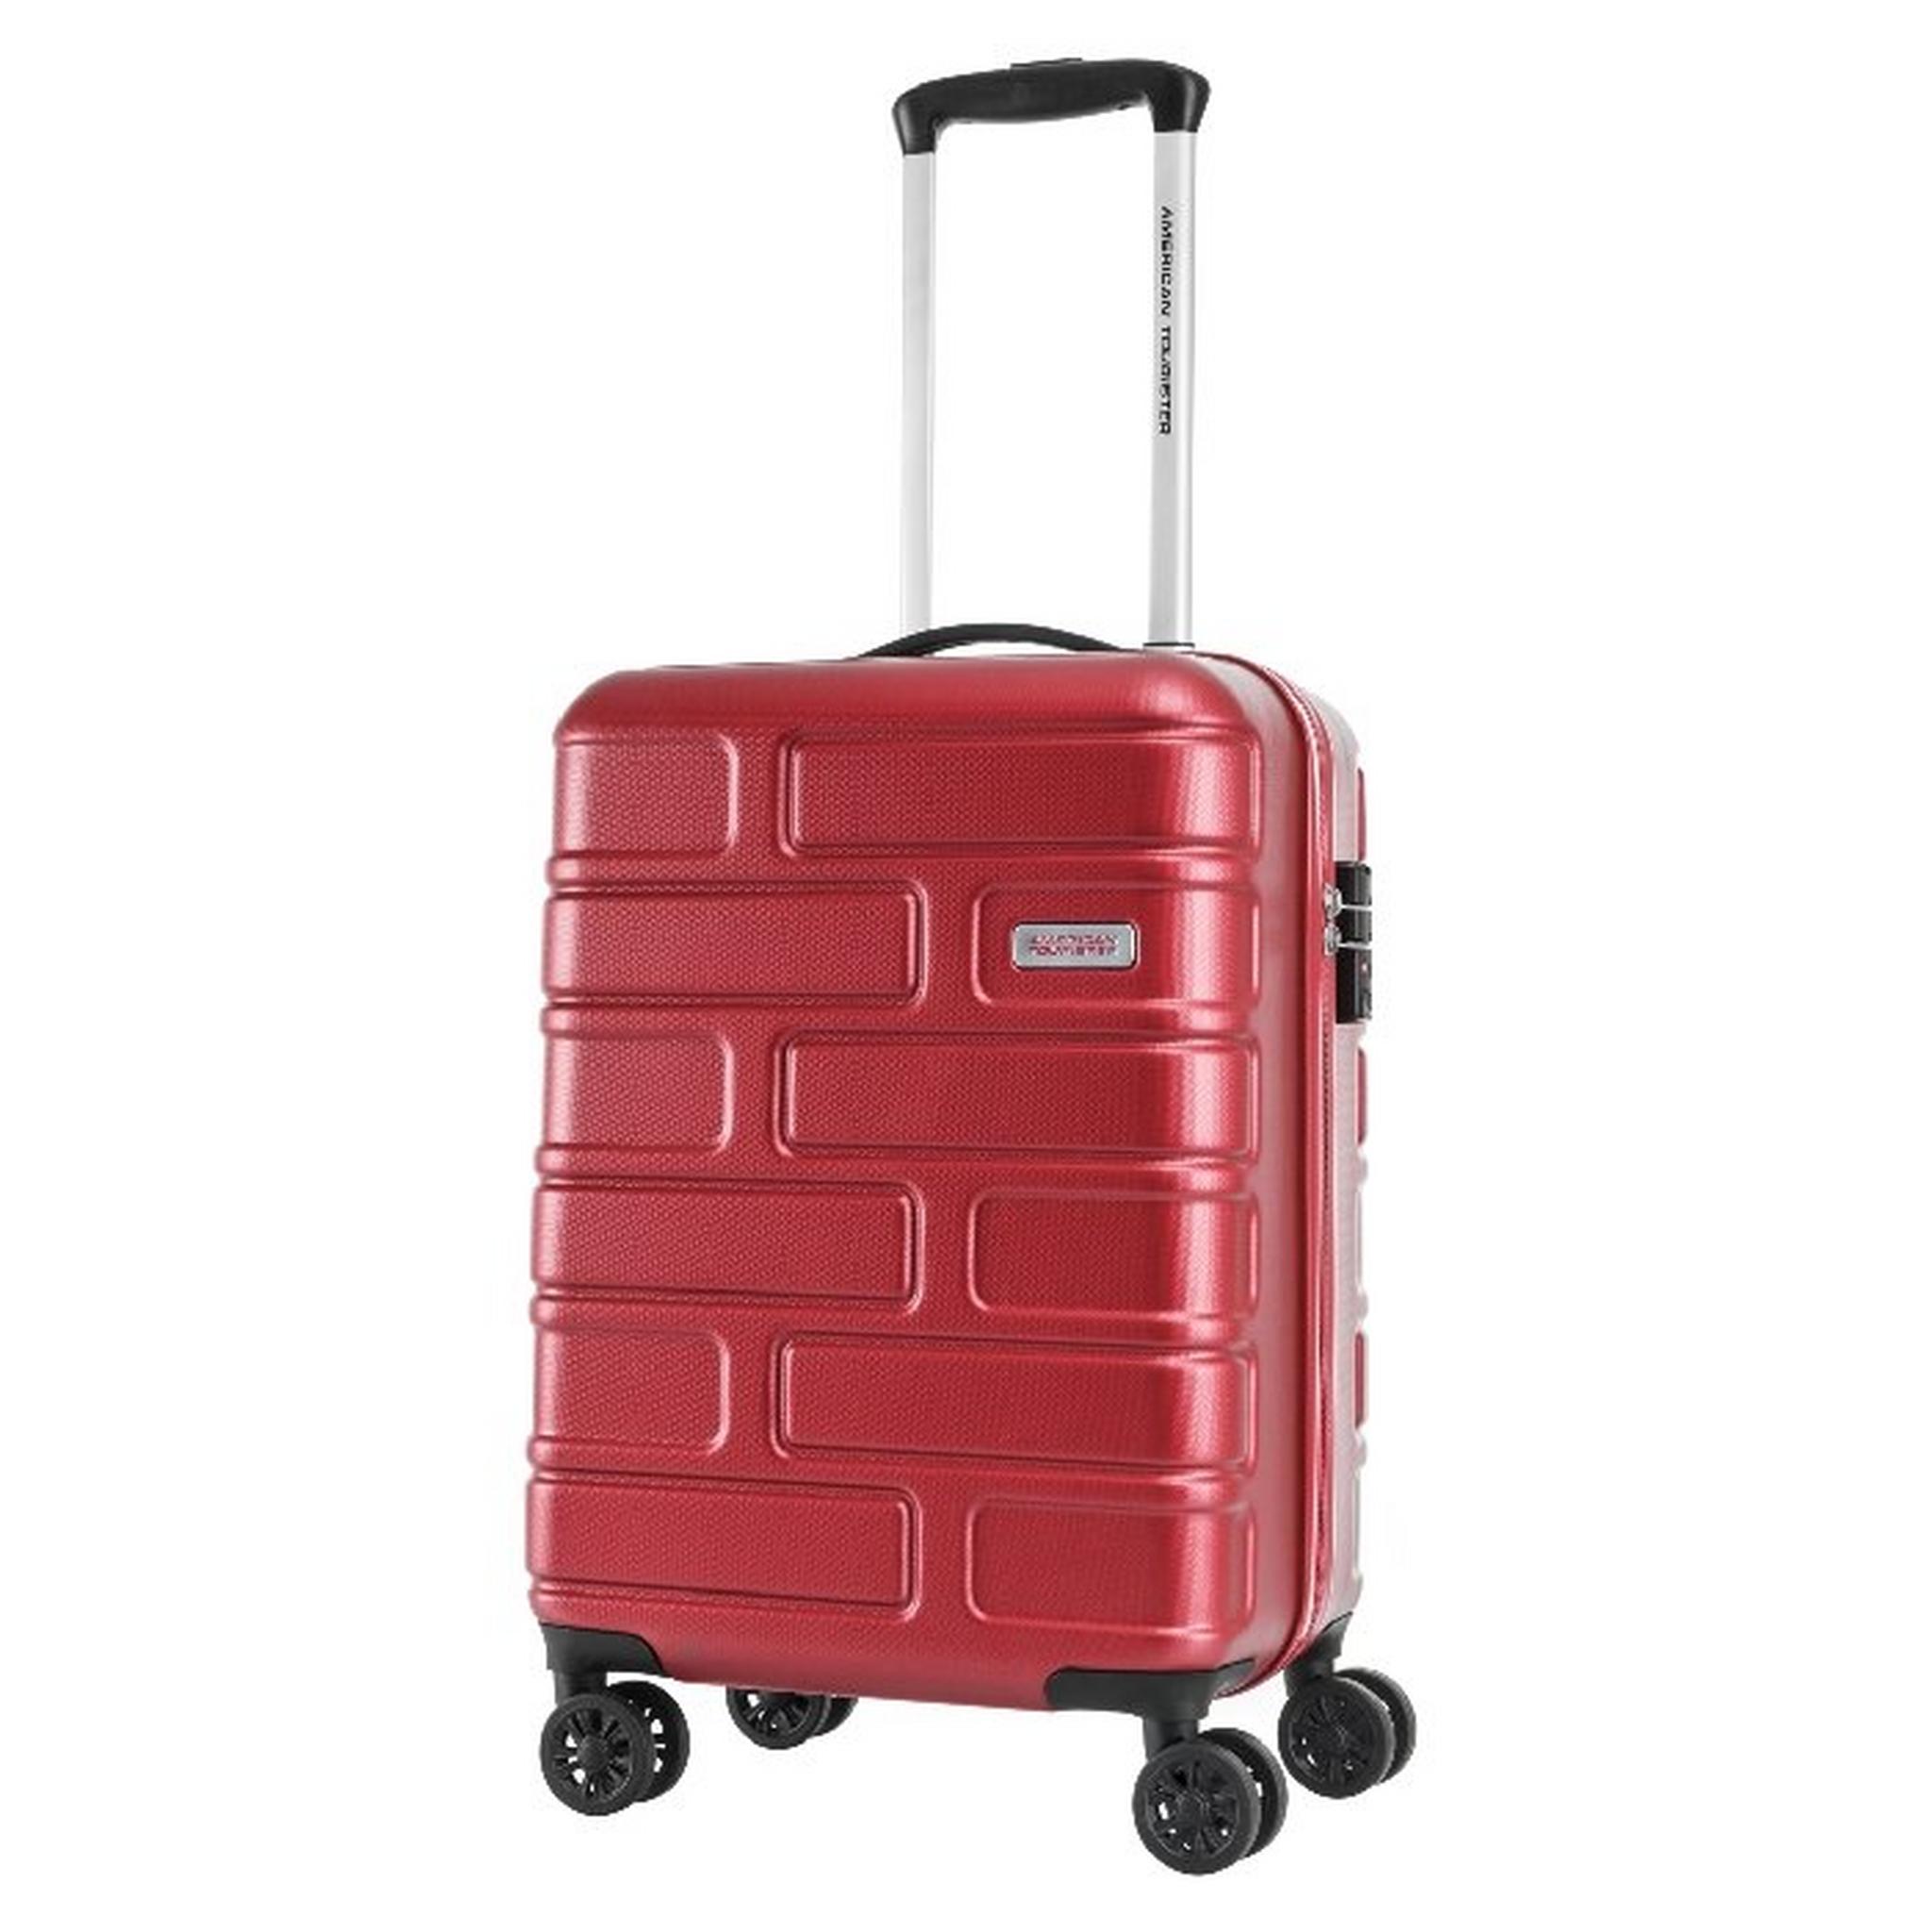 حقيبة بريكلين الصلبة من أميريكان توريستر 55سم (GE3X80005)- أحمر